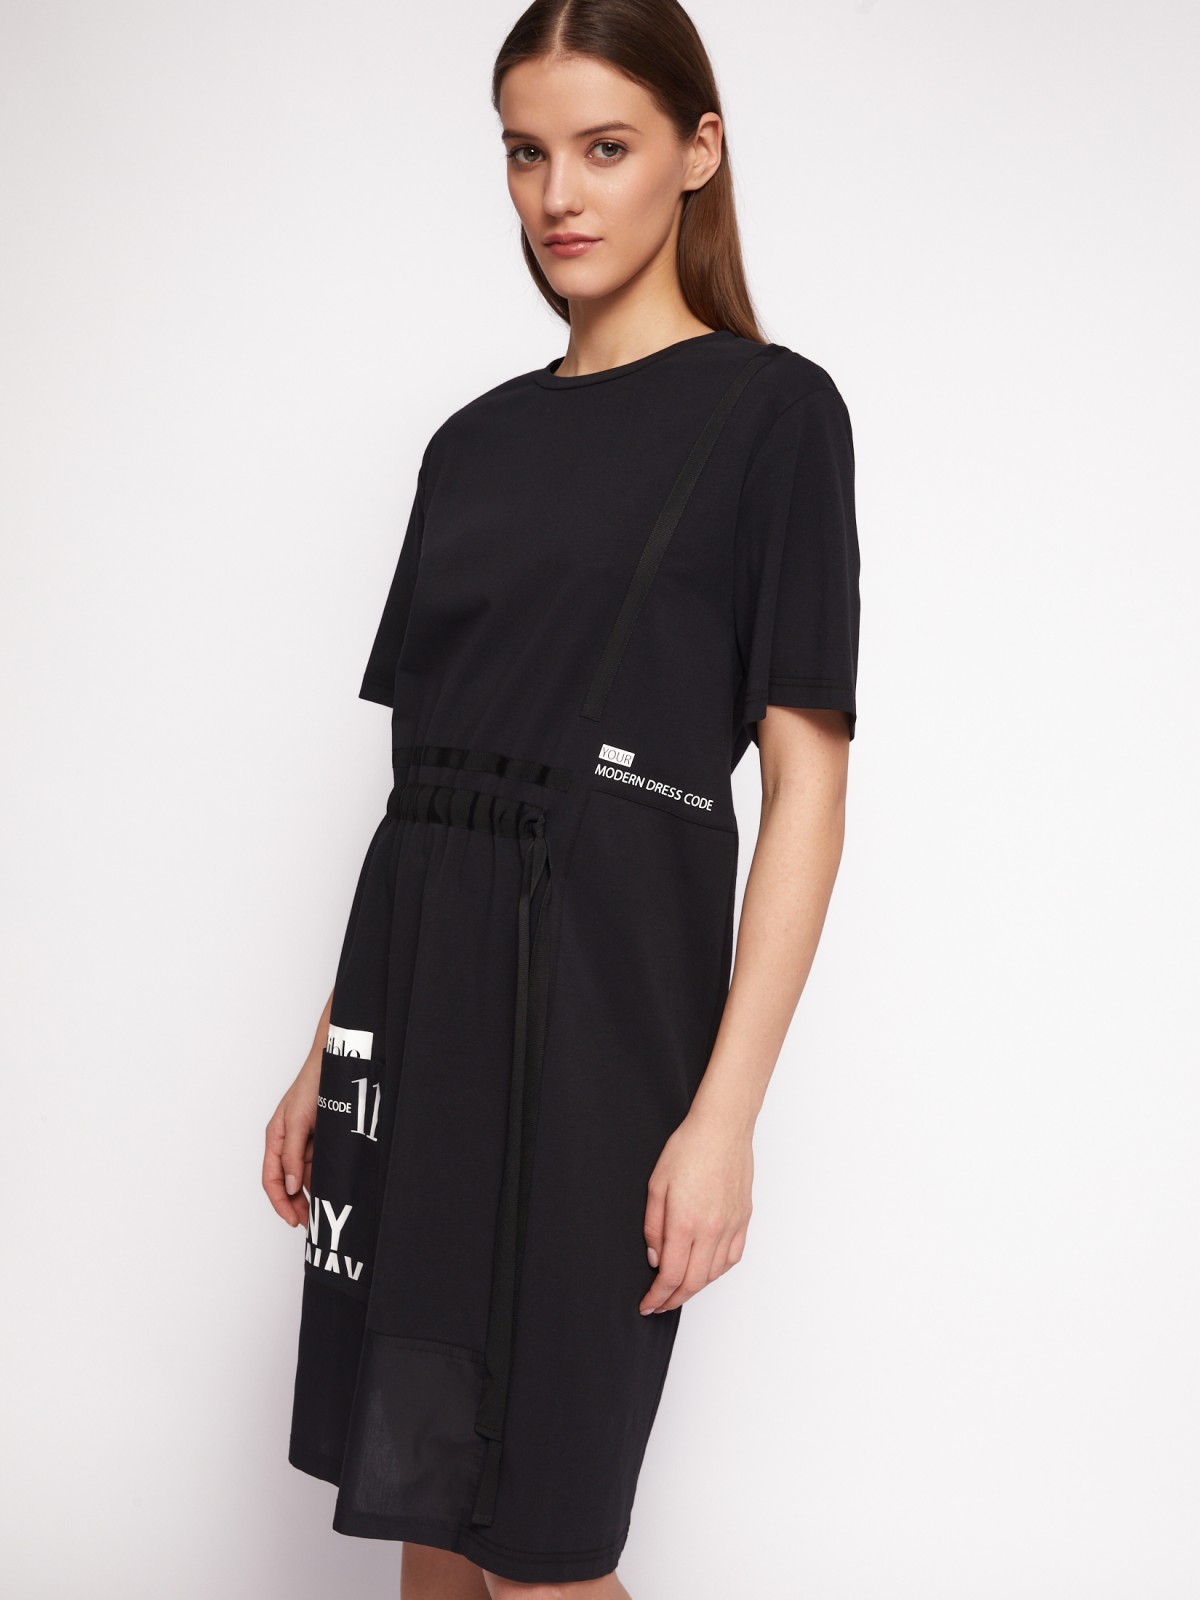 Платье-футболка из хлопка с завязками на талии zolla 024218139021, цвет черный, размер S - фото 5